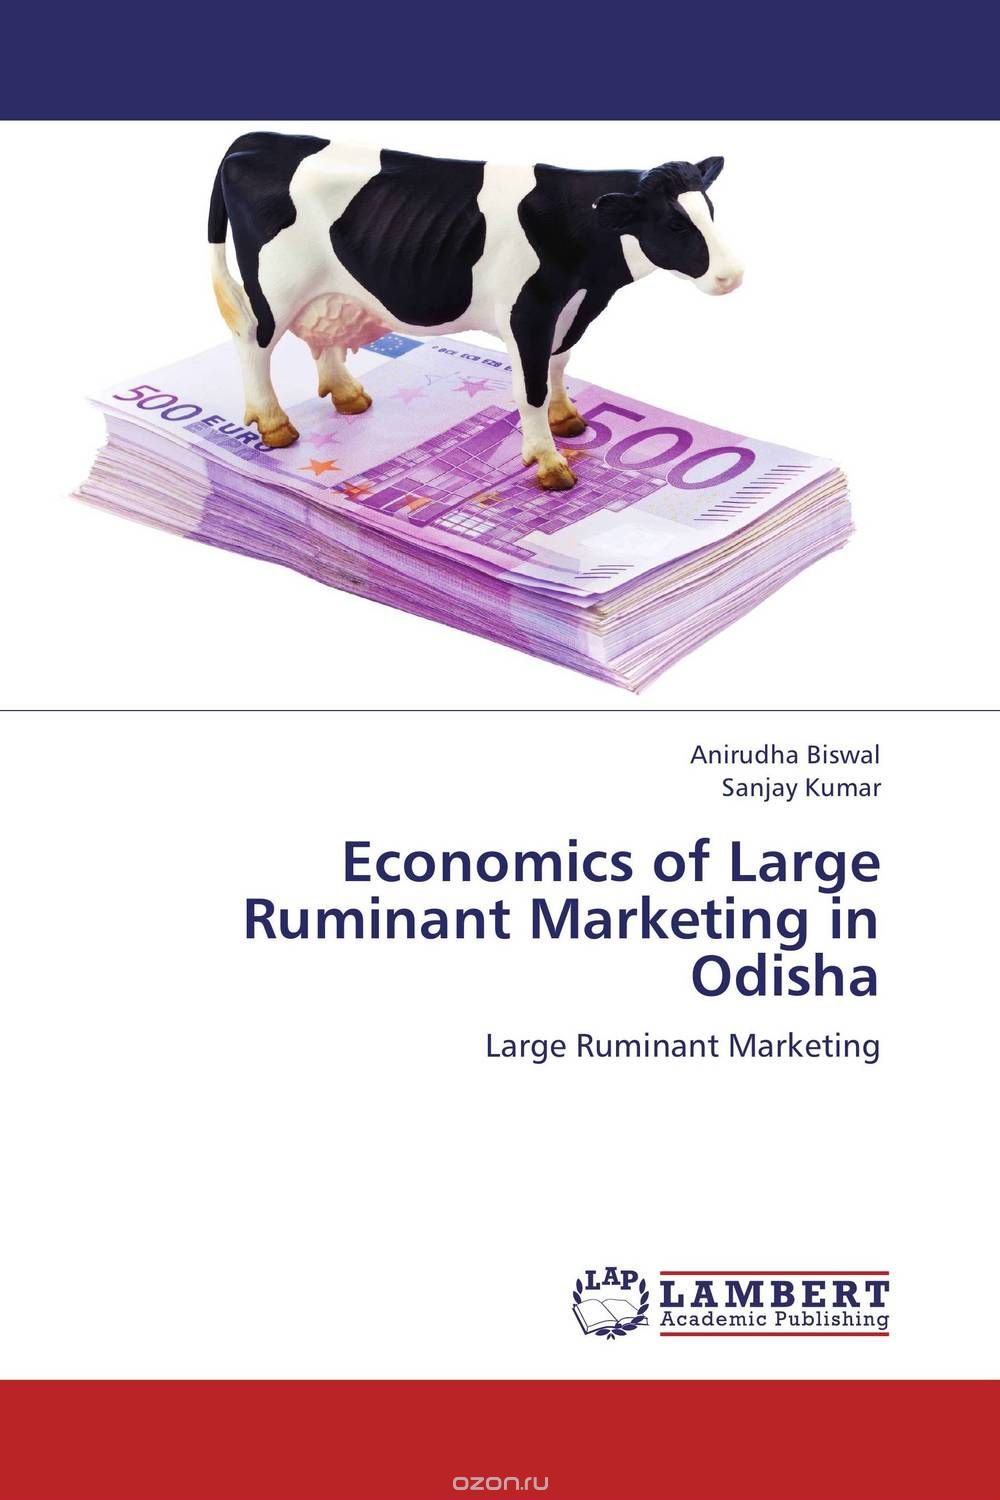 Economics of Large Ruminant Marketing in Odisha